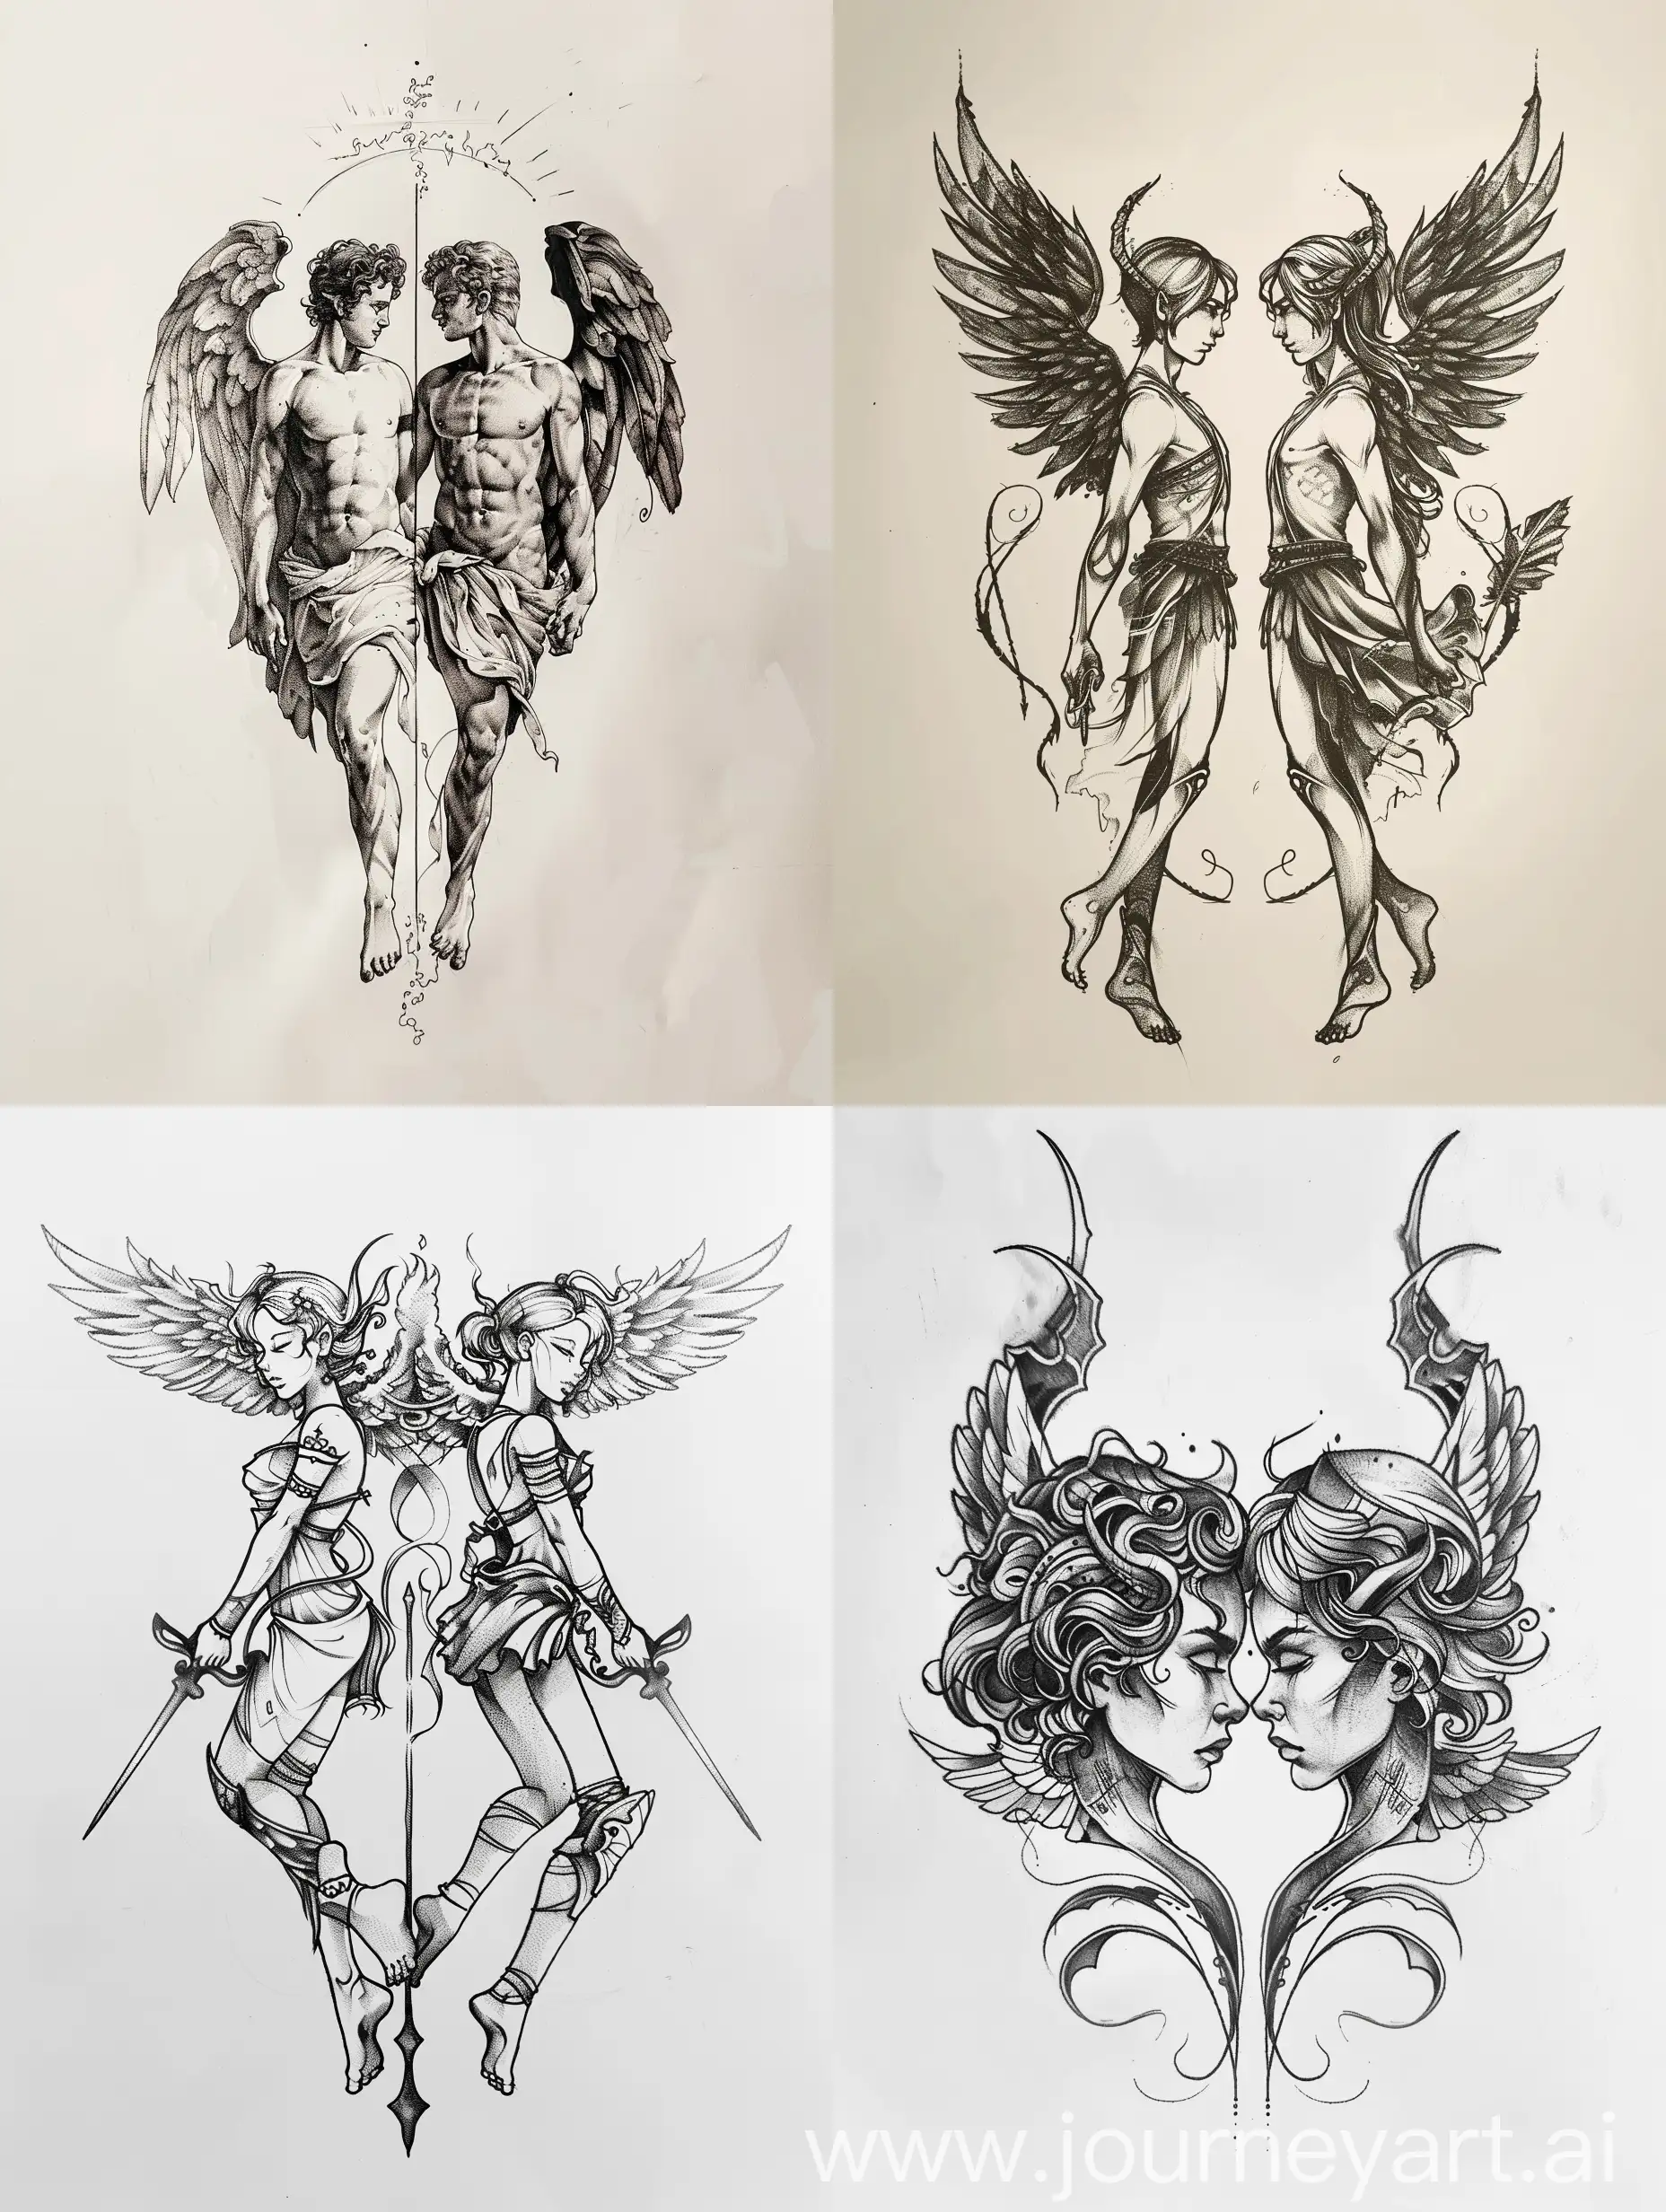 Symmetrical-Minimalist-Apollo-and-Artemis-Tattoo-Sketch-on-White-Background